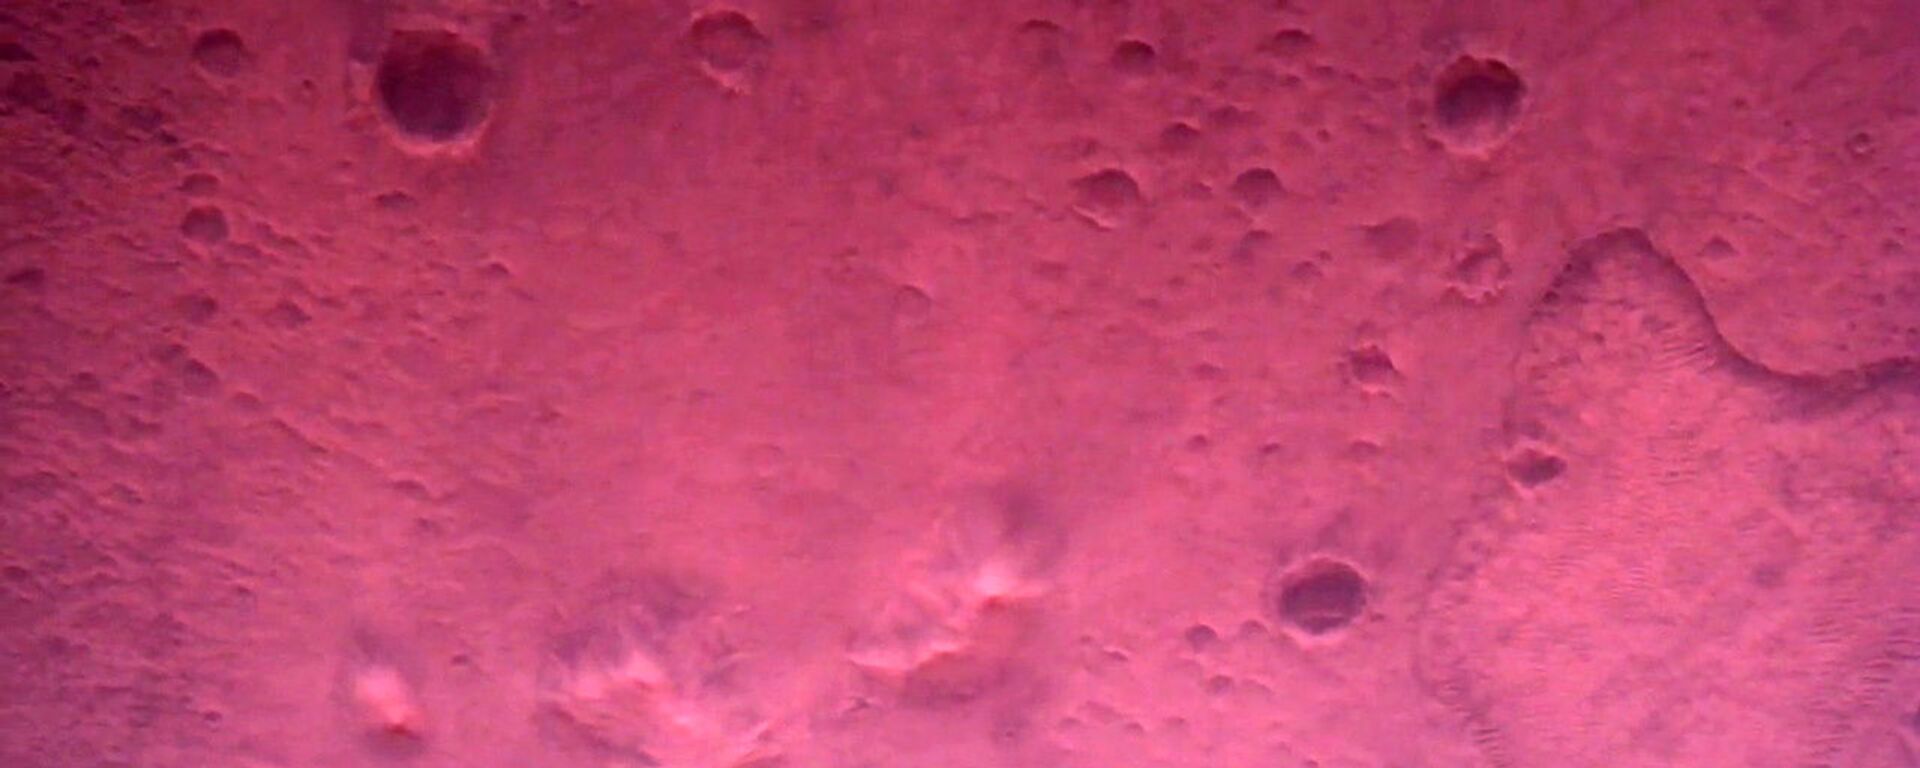 صورة لسطح كوكب المريخ مباشرة أسفل مركبة المركبة المتجولة بيرسيفرانس مارس التابعة لوكالة الفضاء الدولية ناسا، بواسطة كاميرا روفر داون-لوك في صورة تم الحصول عليها في 22 فبراير 2021 - سبوتنيك عربي, 1920, 15.12.2021